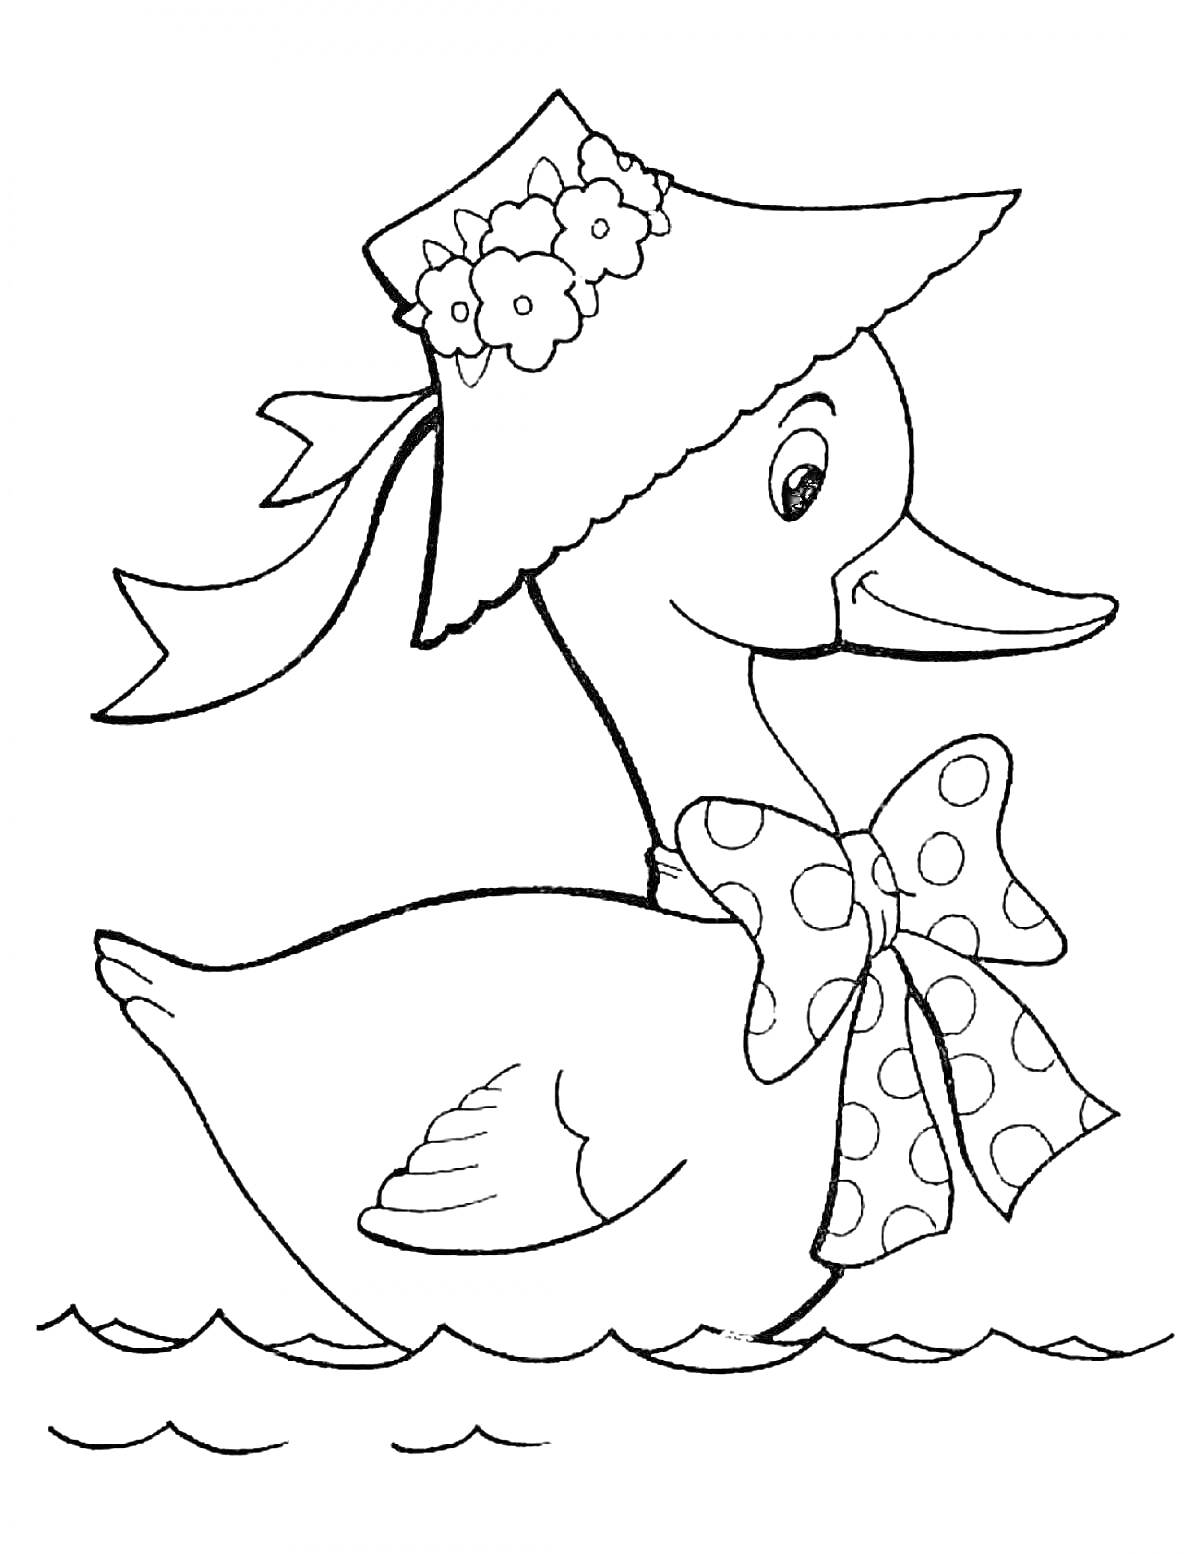 Раскраска Гусь в шляпе с цветами и бантом на шее, плавающий по воде